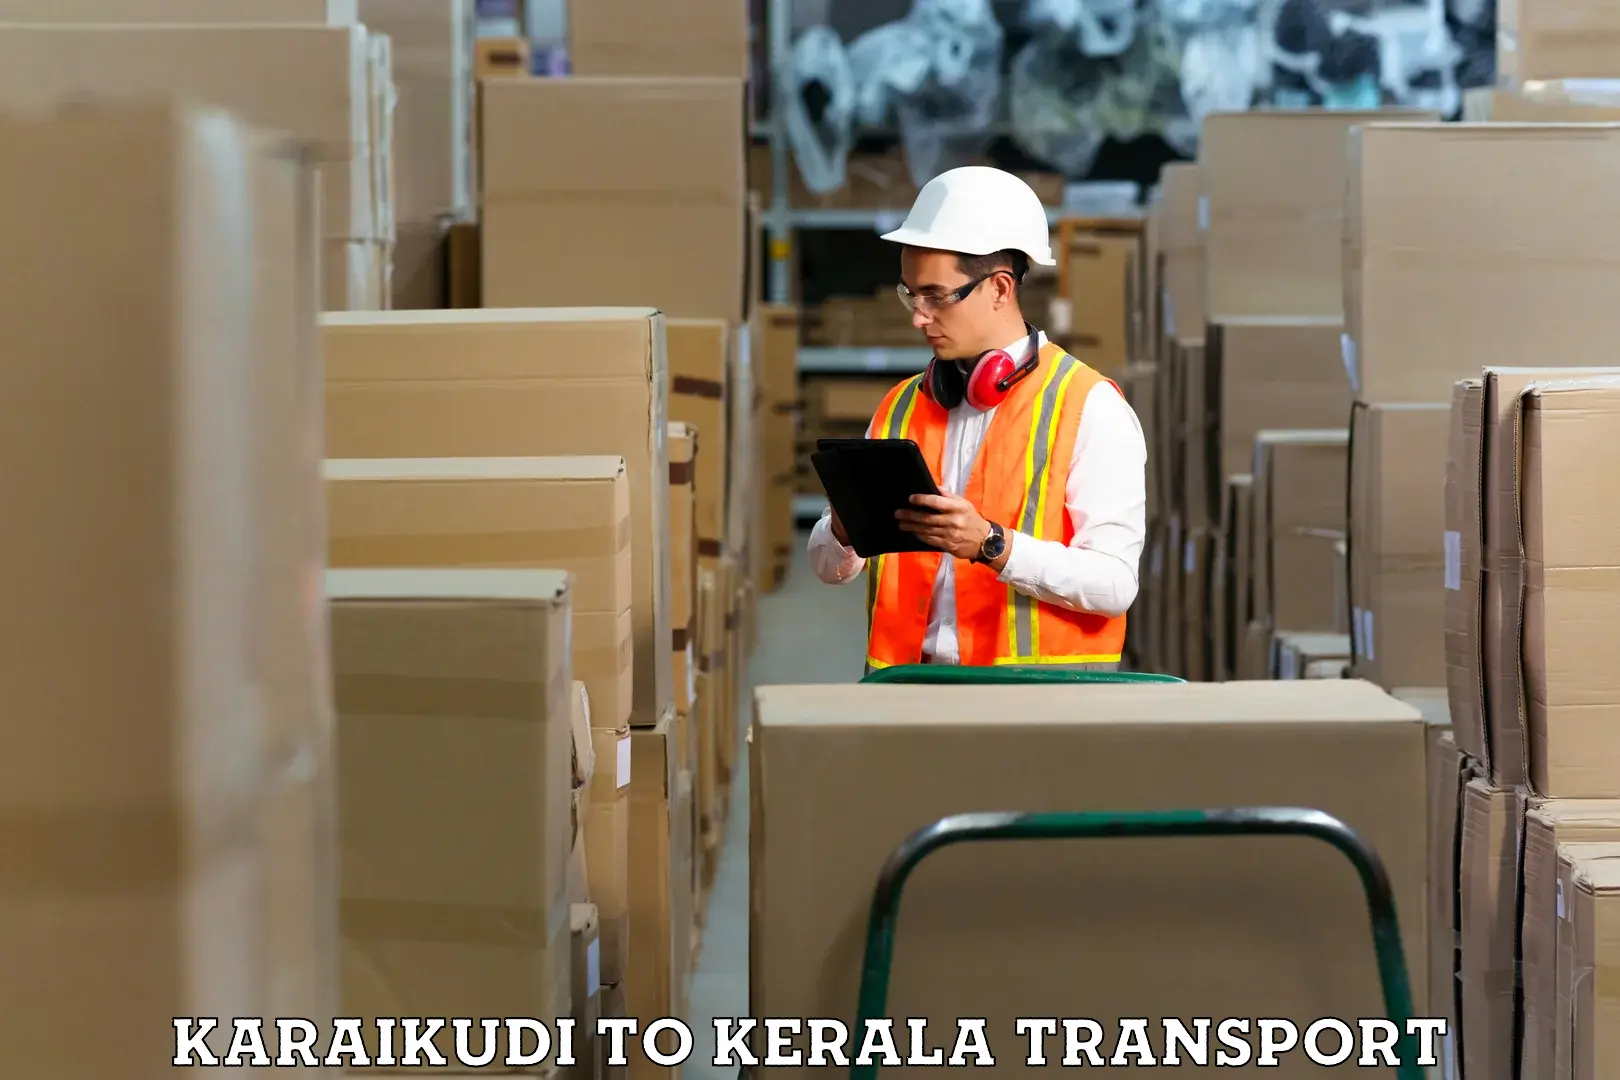 Container transport service Karaikudi to Rajamudy